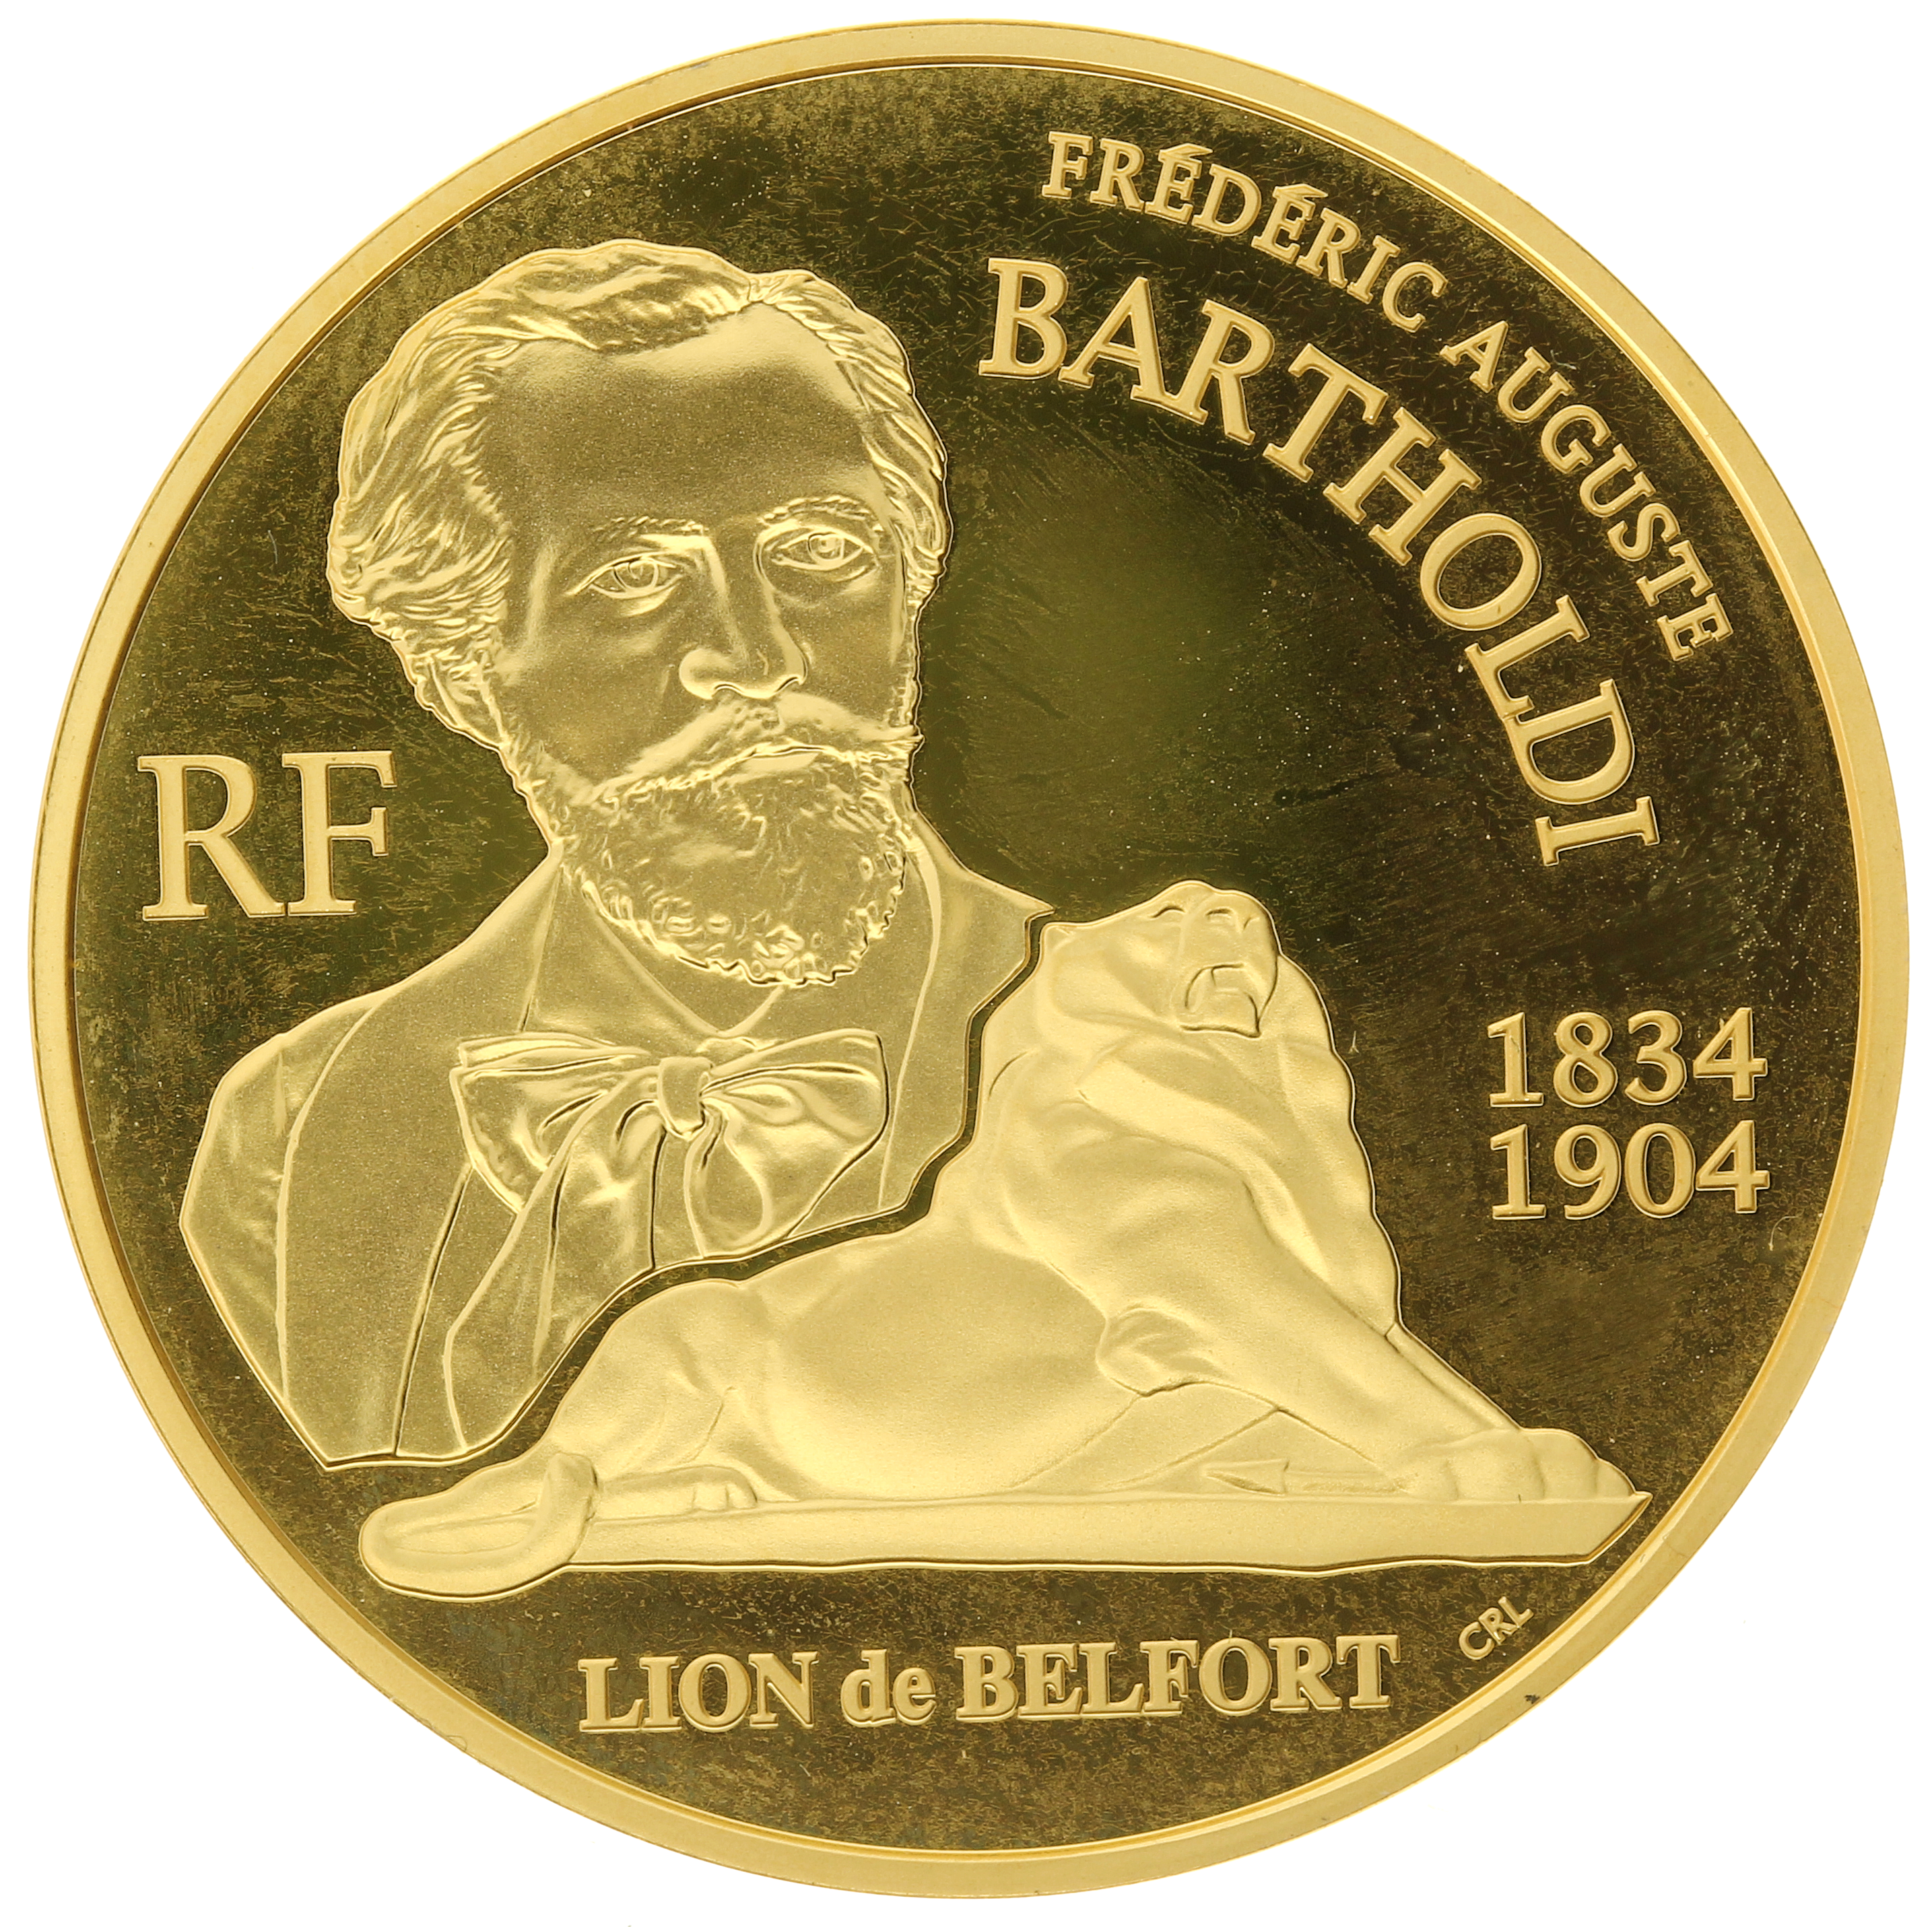 France - 20 euros - 2004 - Bartholdi - 1/2oz